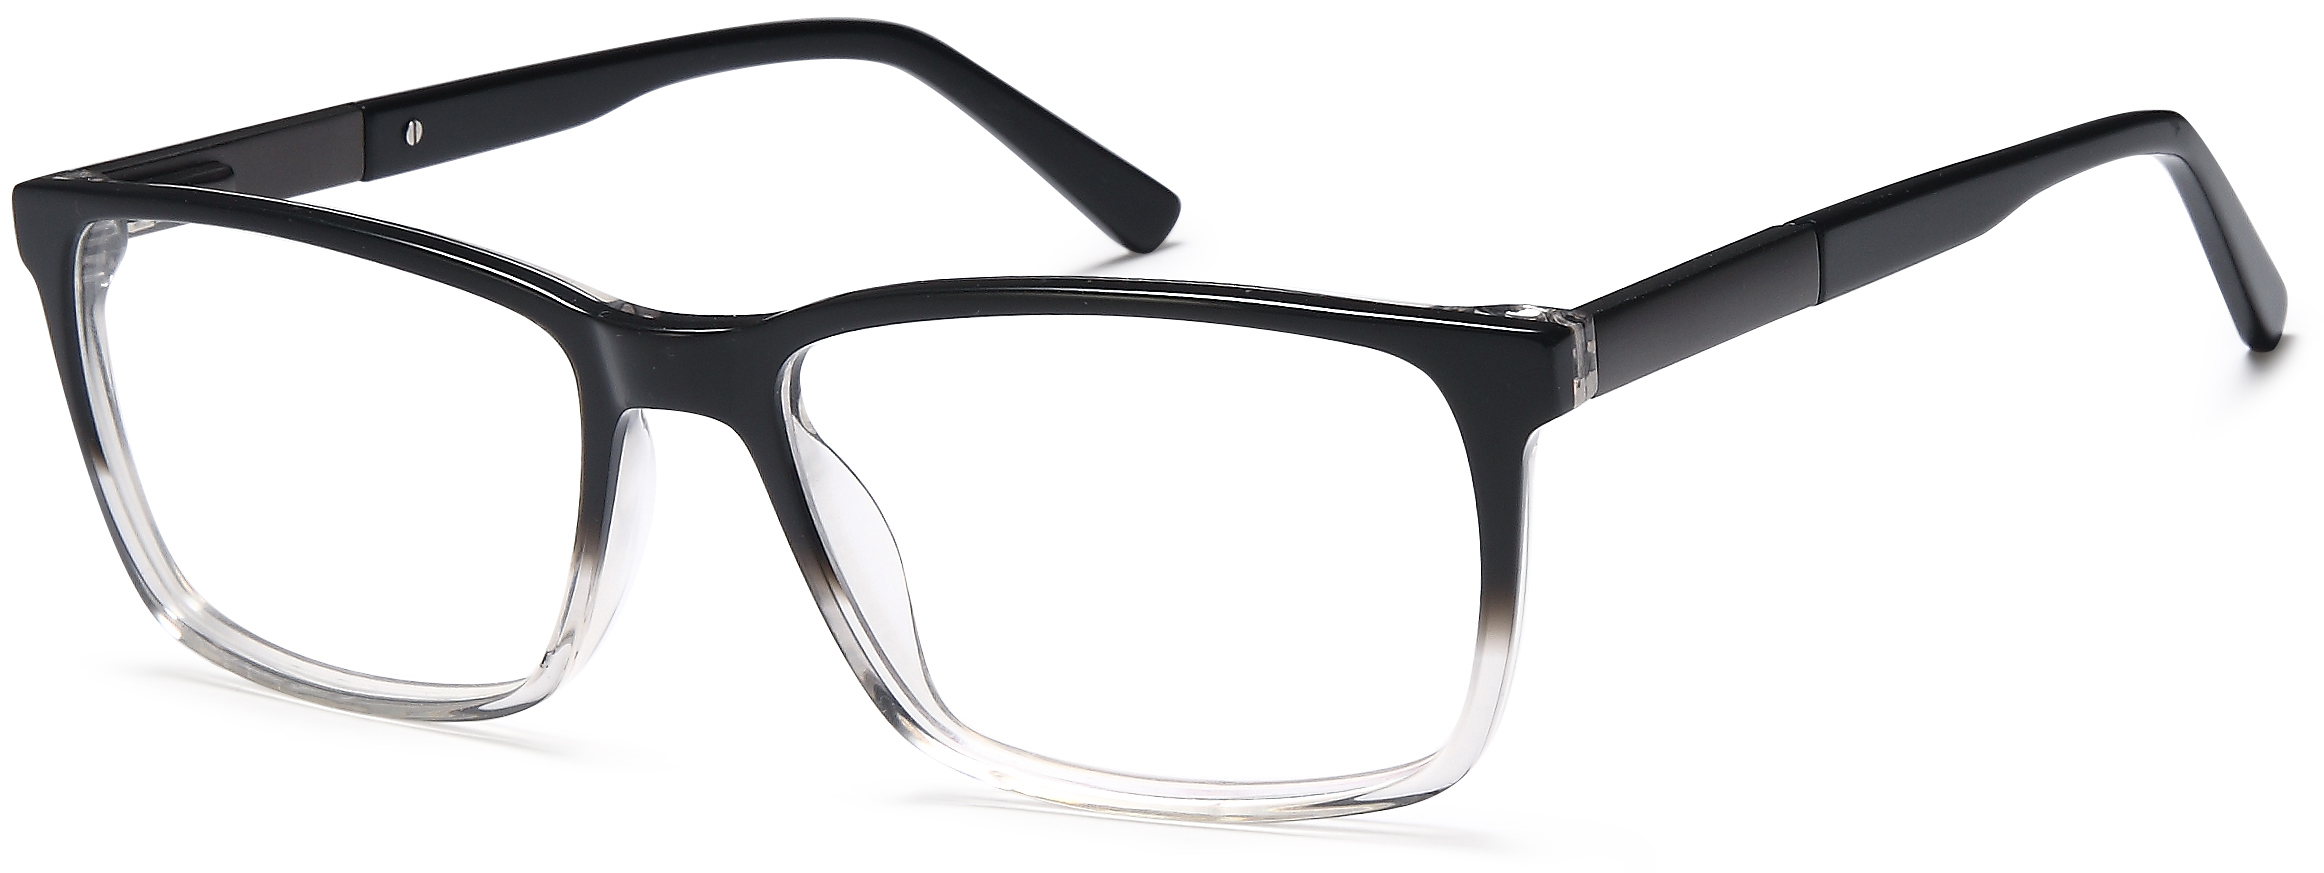 Picture of Grande Eyeglasses GR815